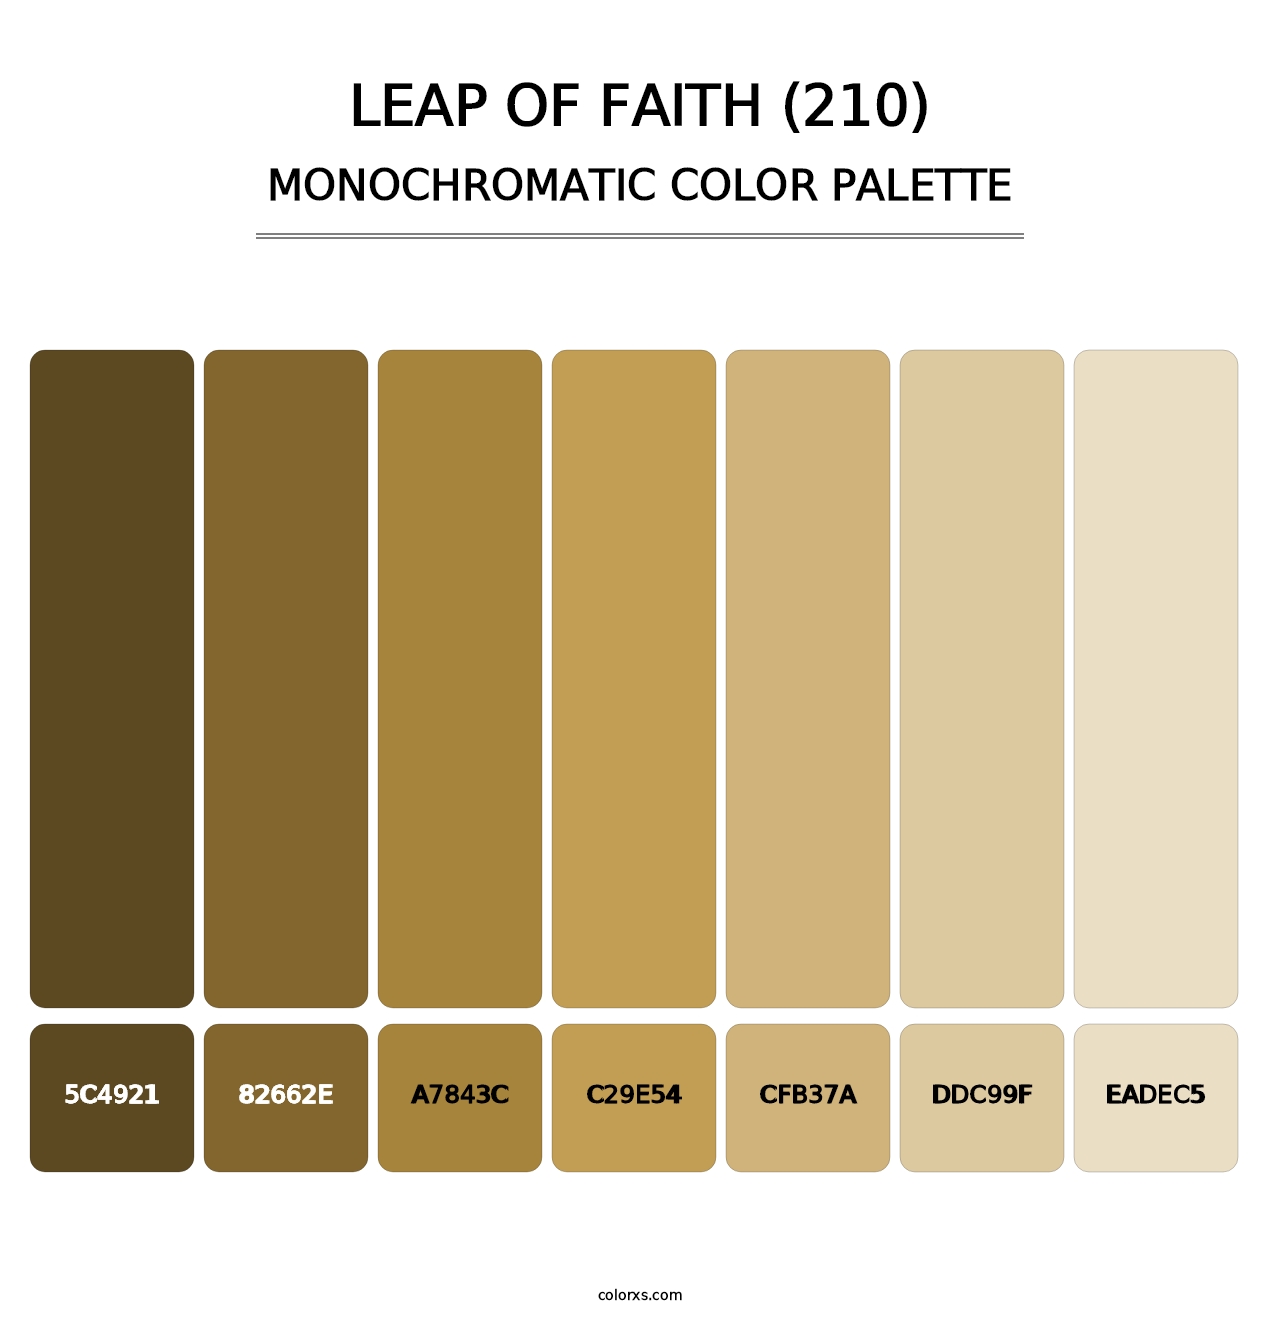 Leap of Faith (210) - Monochromatic Color Palette